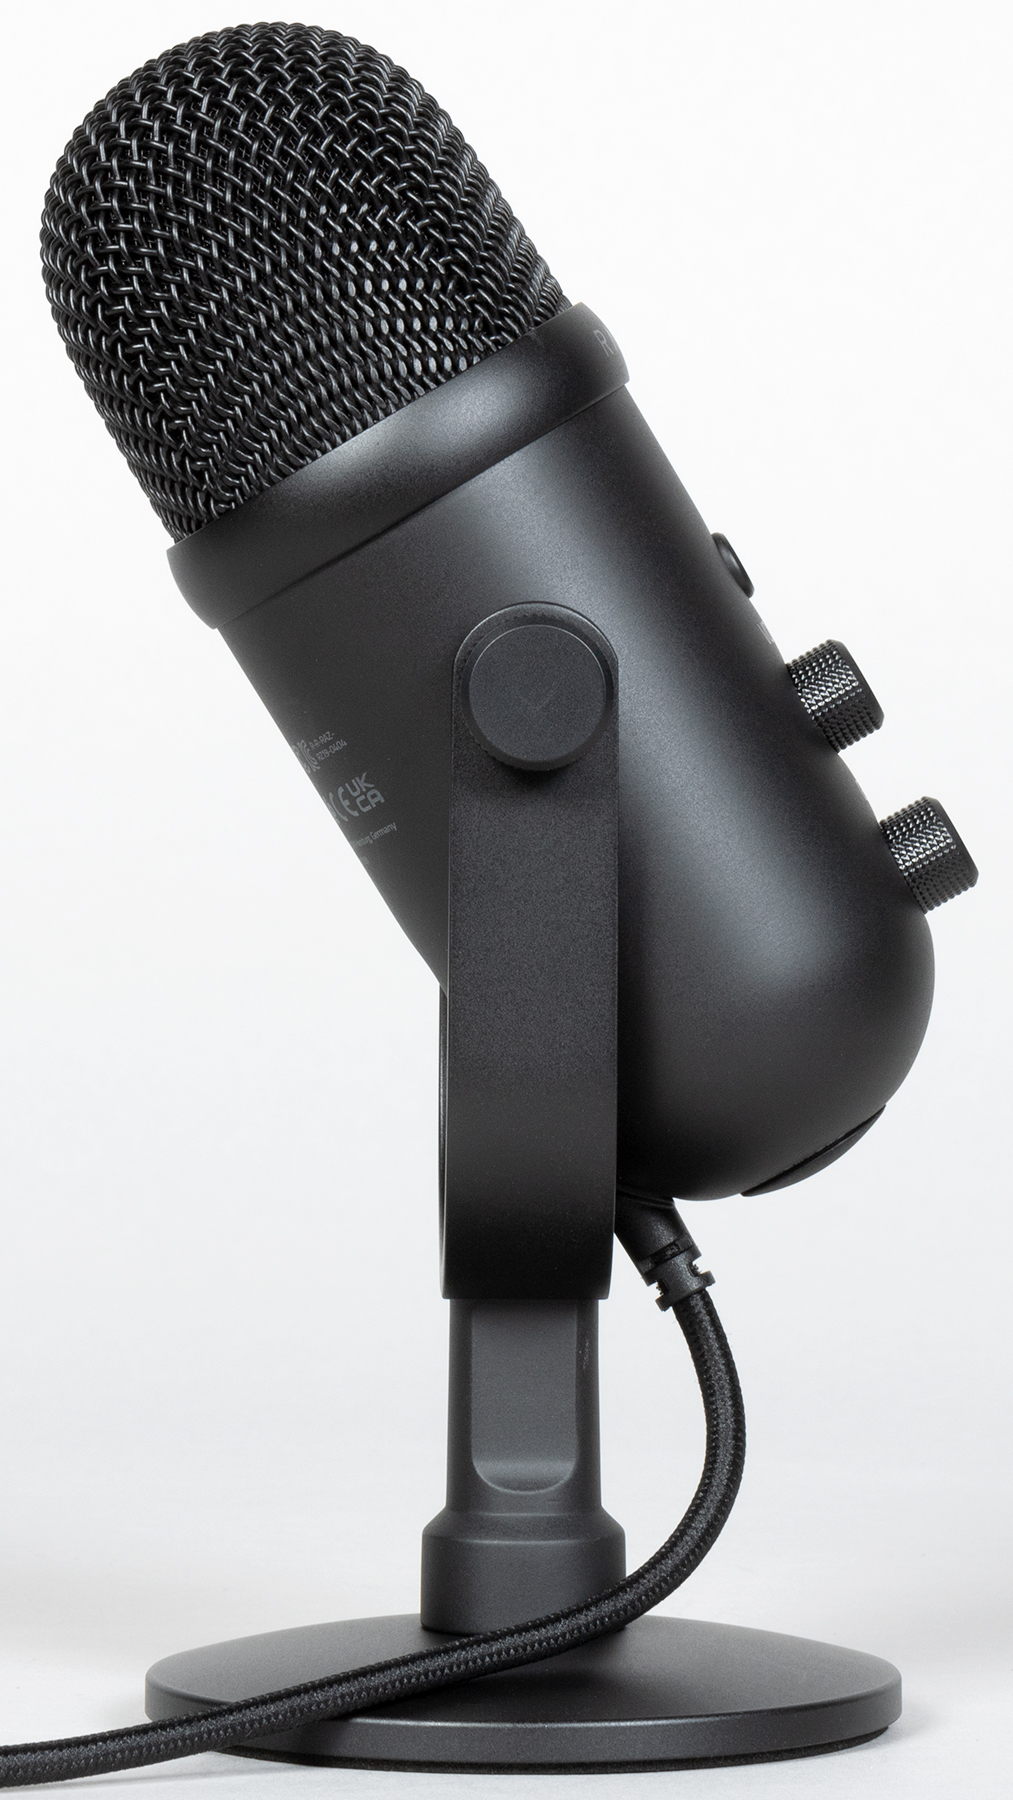 Измерительный микрофон: USB-микрофон и другие модели. Выбор и характеристики.